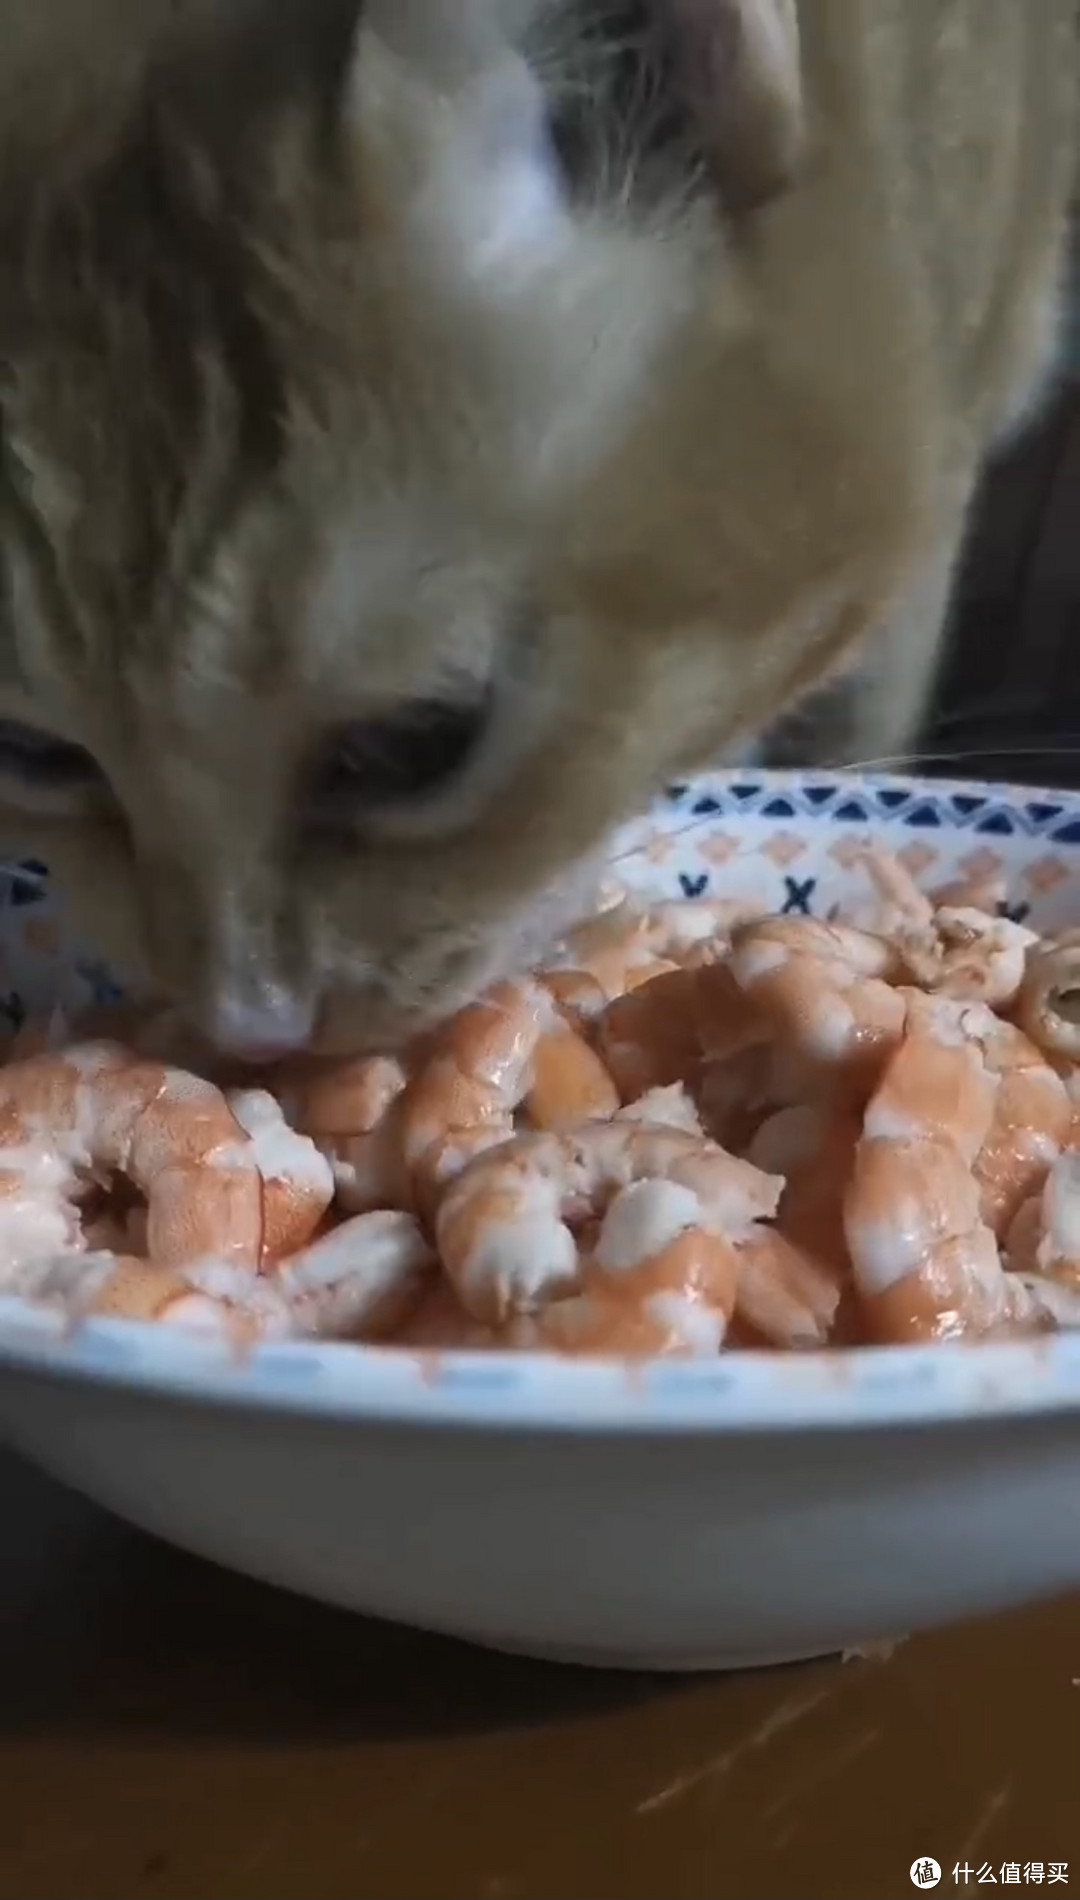 猫咪很喜欢吃大虾。。快买不起了